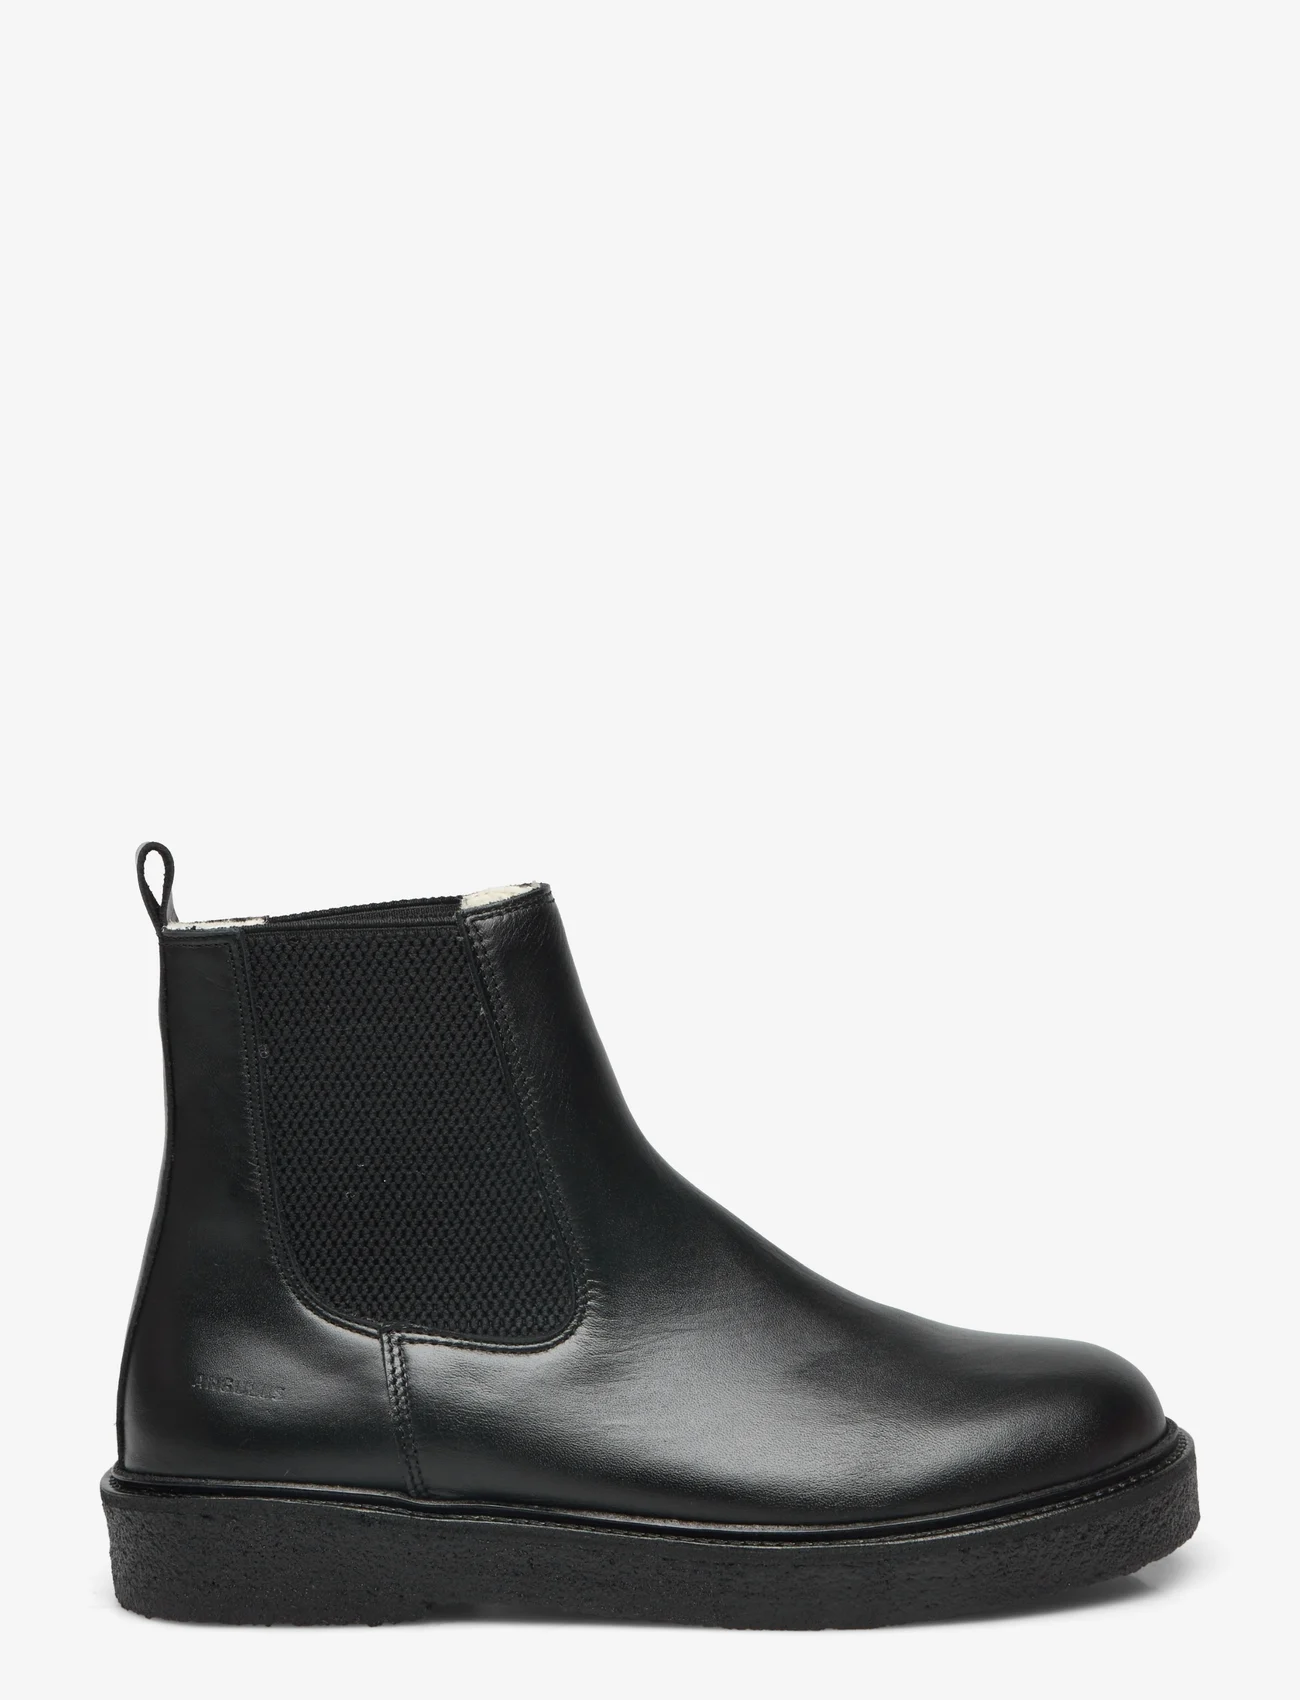 ANGULUS - Boots - flat - chelsea boots - 1604/053 black/black - 1